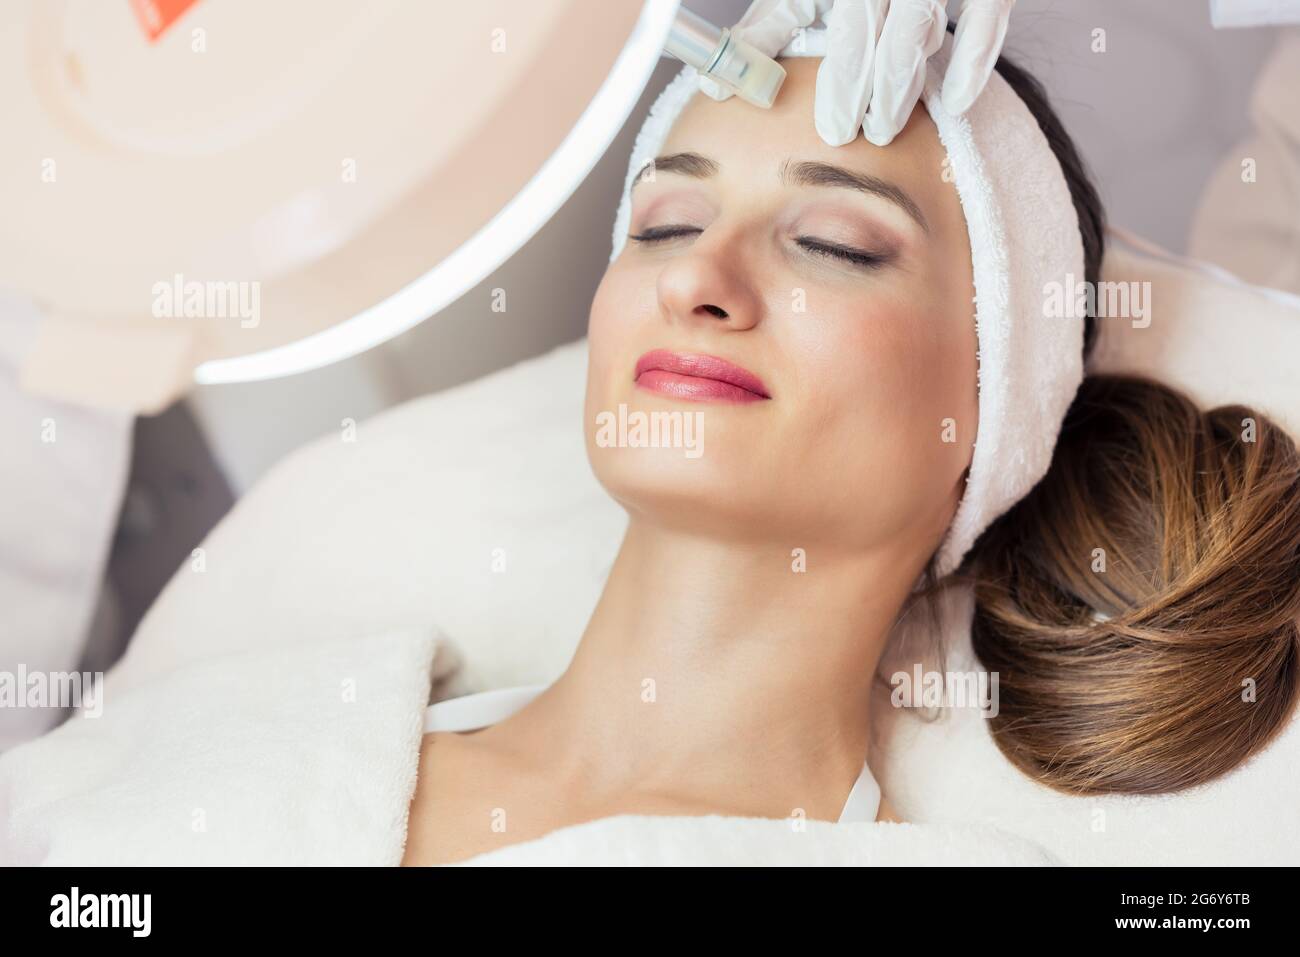 Primer plano de la cara de una mujer que se relaja durante un tratamiento de estiramiento facial no quirúrgico en un salón de belleza contemporáneo con tecnología innovadora Foto de stock